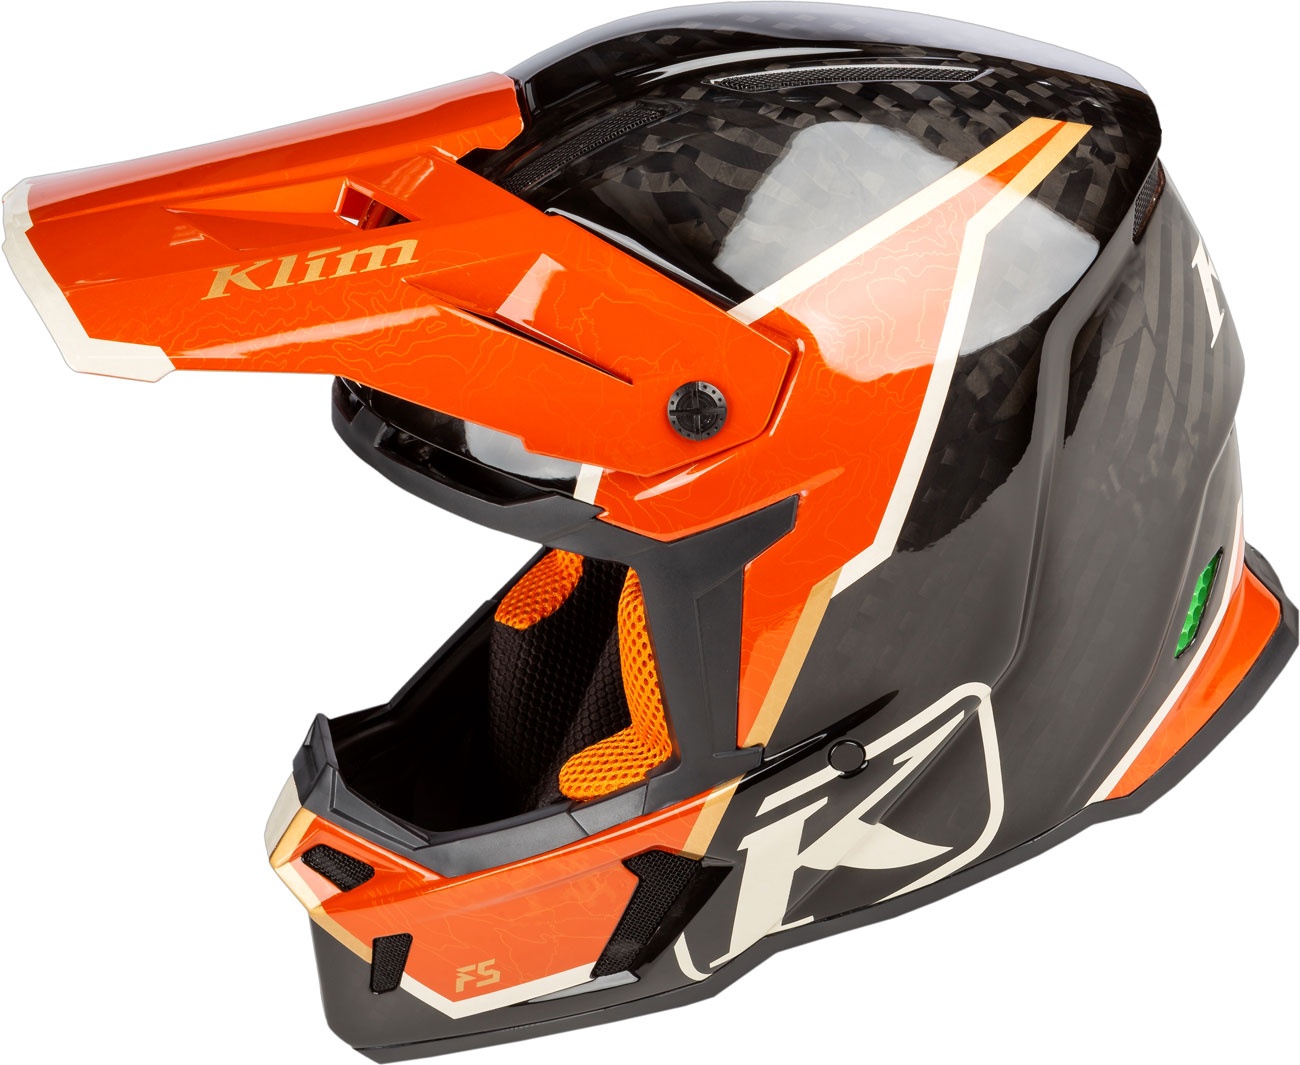 Klim F5 Koroyd Topo, Motocrosshelm - Schwarz/Orange - XL